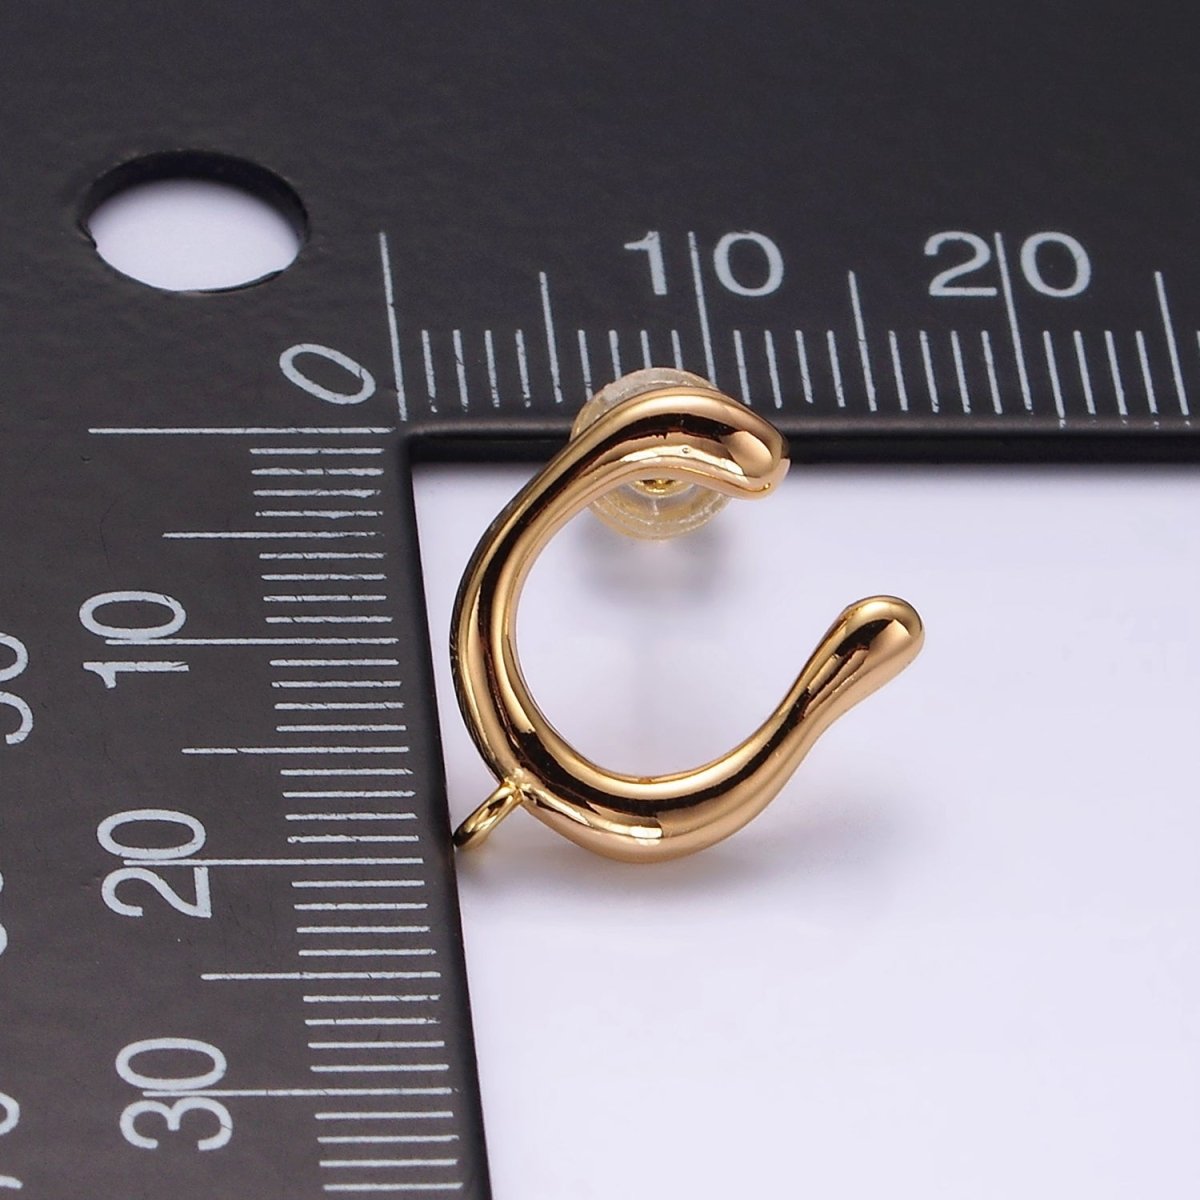 14K Gold Filled U-Shaped Molten Stud Earring Findings Supply | Z598 - DLUXCA